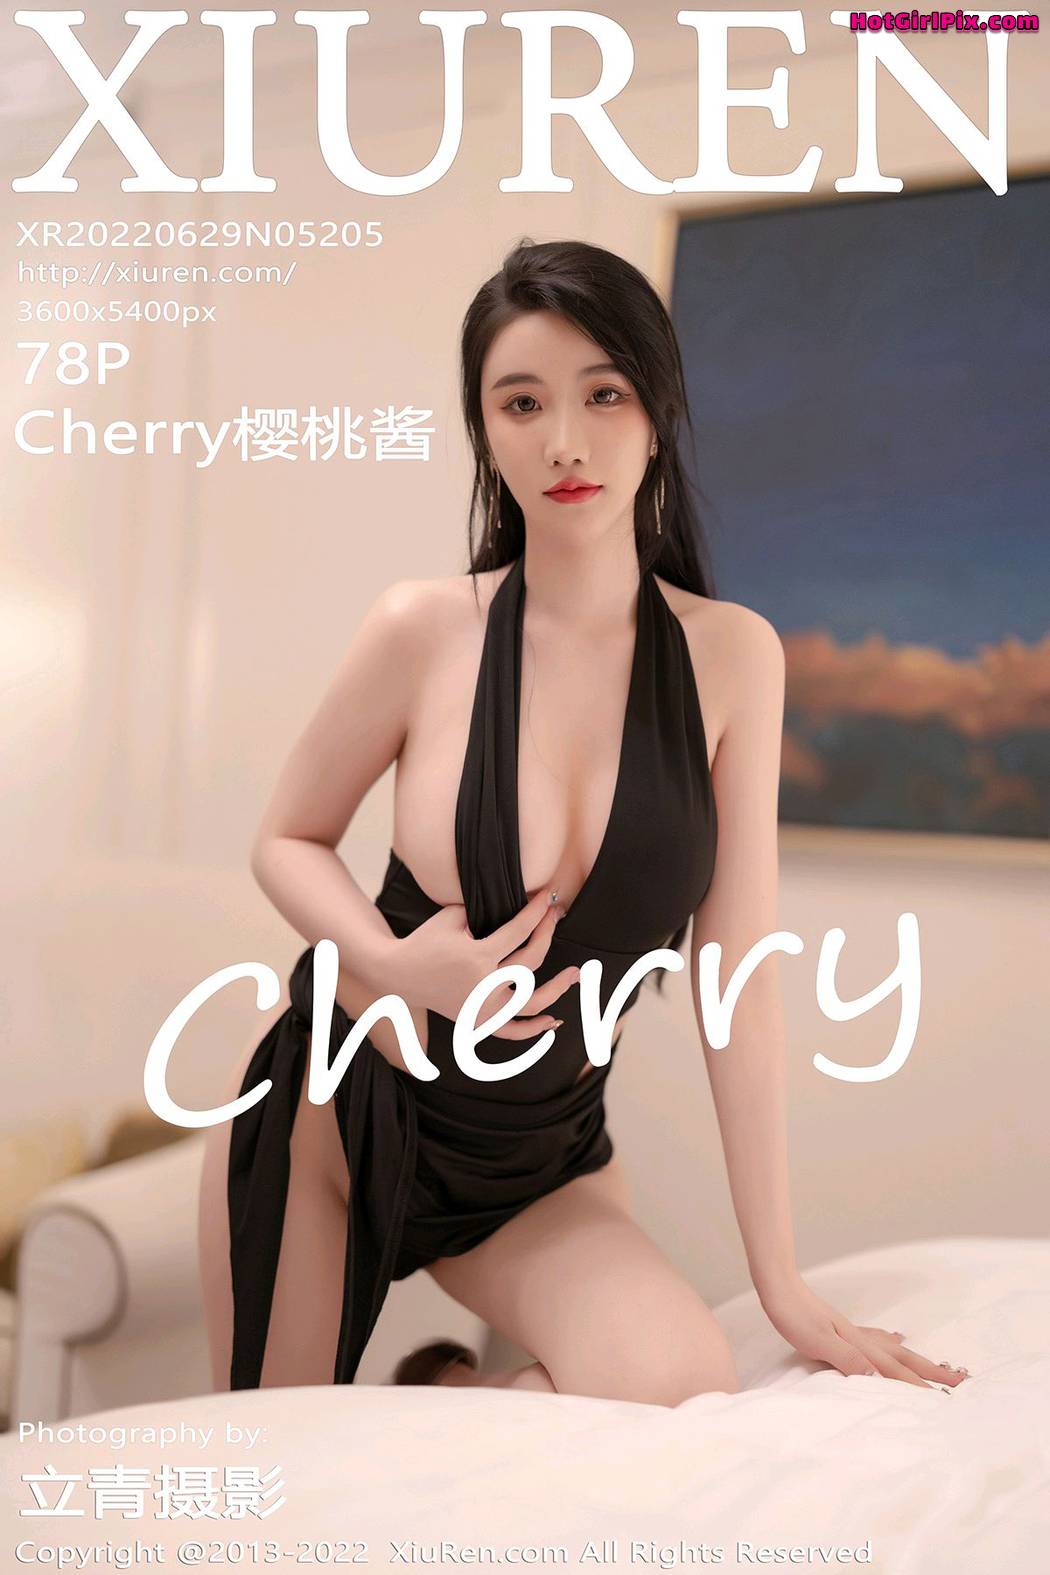 [XIUREN] No.5205 Cherry樱桃酱 Cover Photo